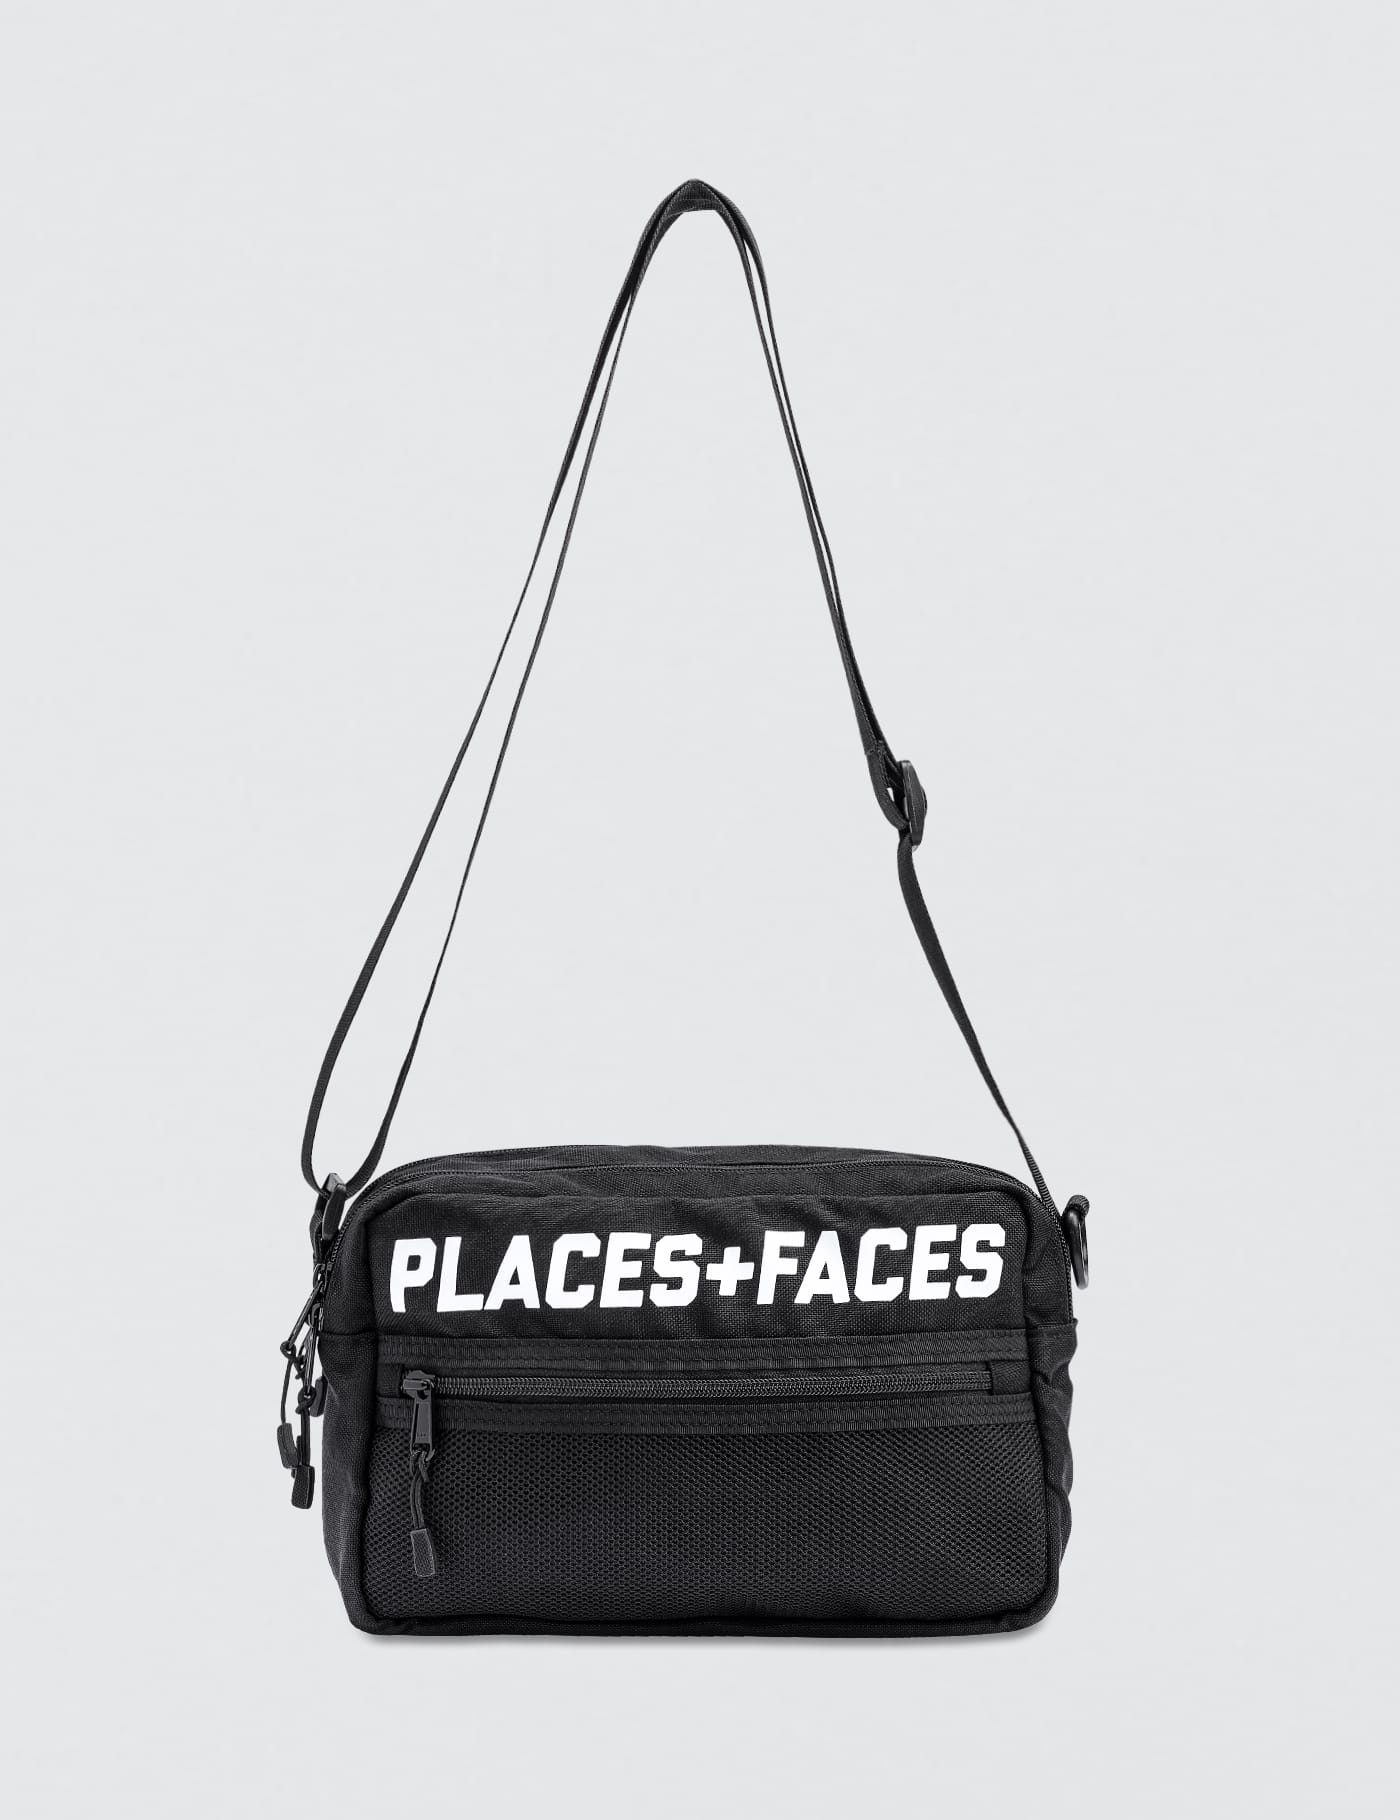 Places + Faces - Pouch Bag | HBX -  ハイプビースト(Hypebeast)が厳選したグローバルファッション&ライフスタイル